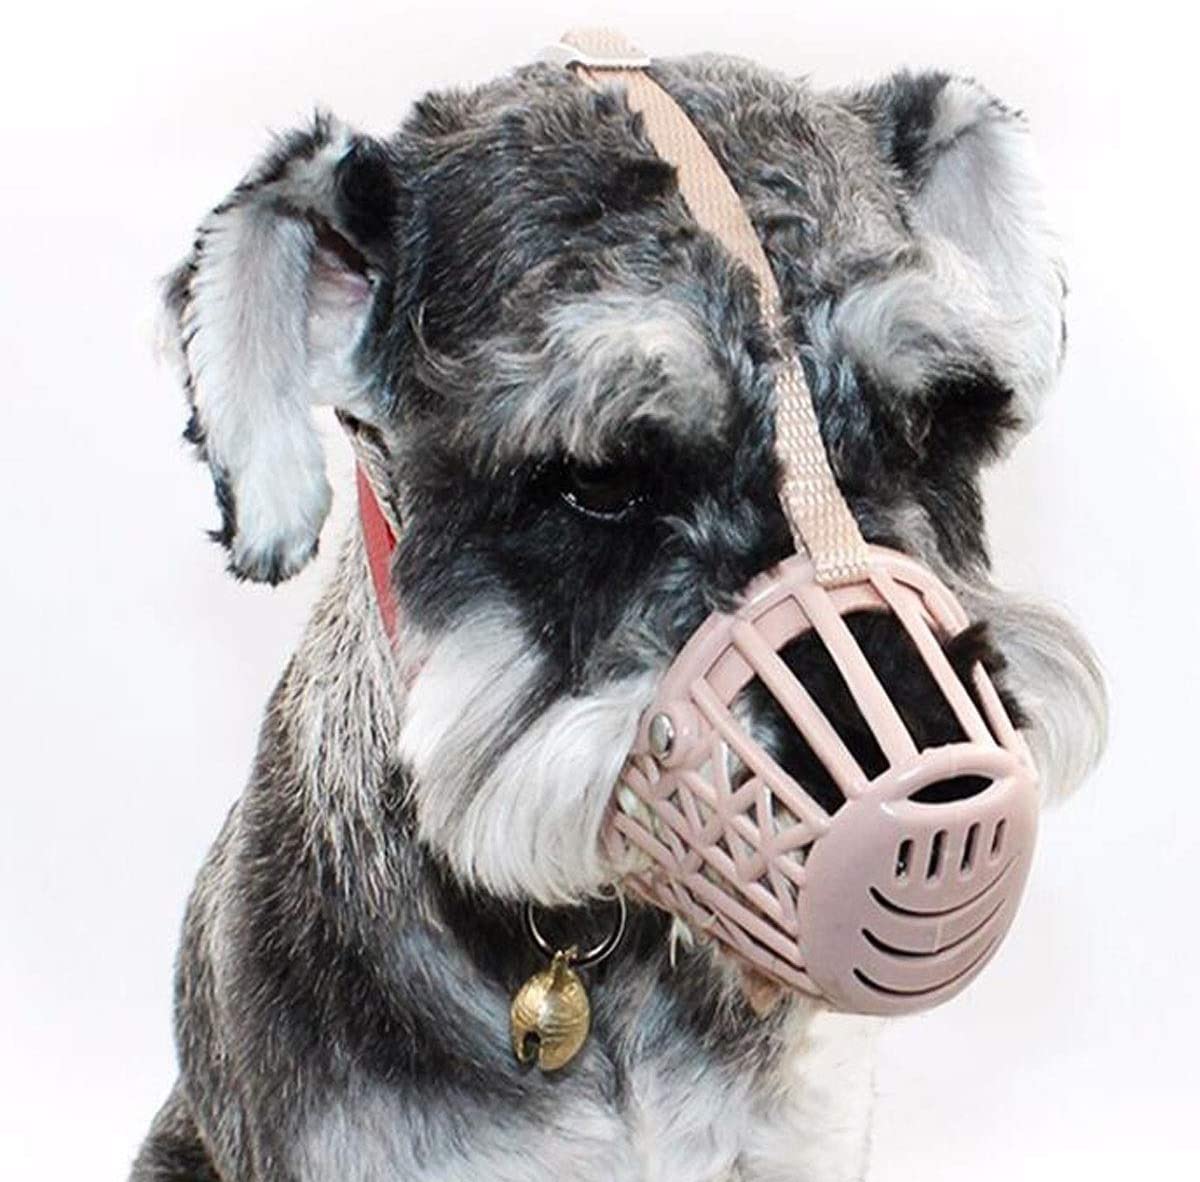  Qiaoxianpo01 Juego de boca para perro, perro pequeño, a prueba de mordidas, máscara de perro, boquilla de plástico blando, con collar, anti-derramamiento, suministros para mascotas, beige, rojo 3 Eleg 